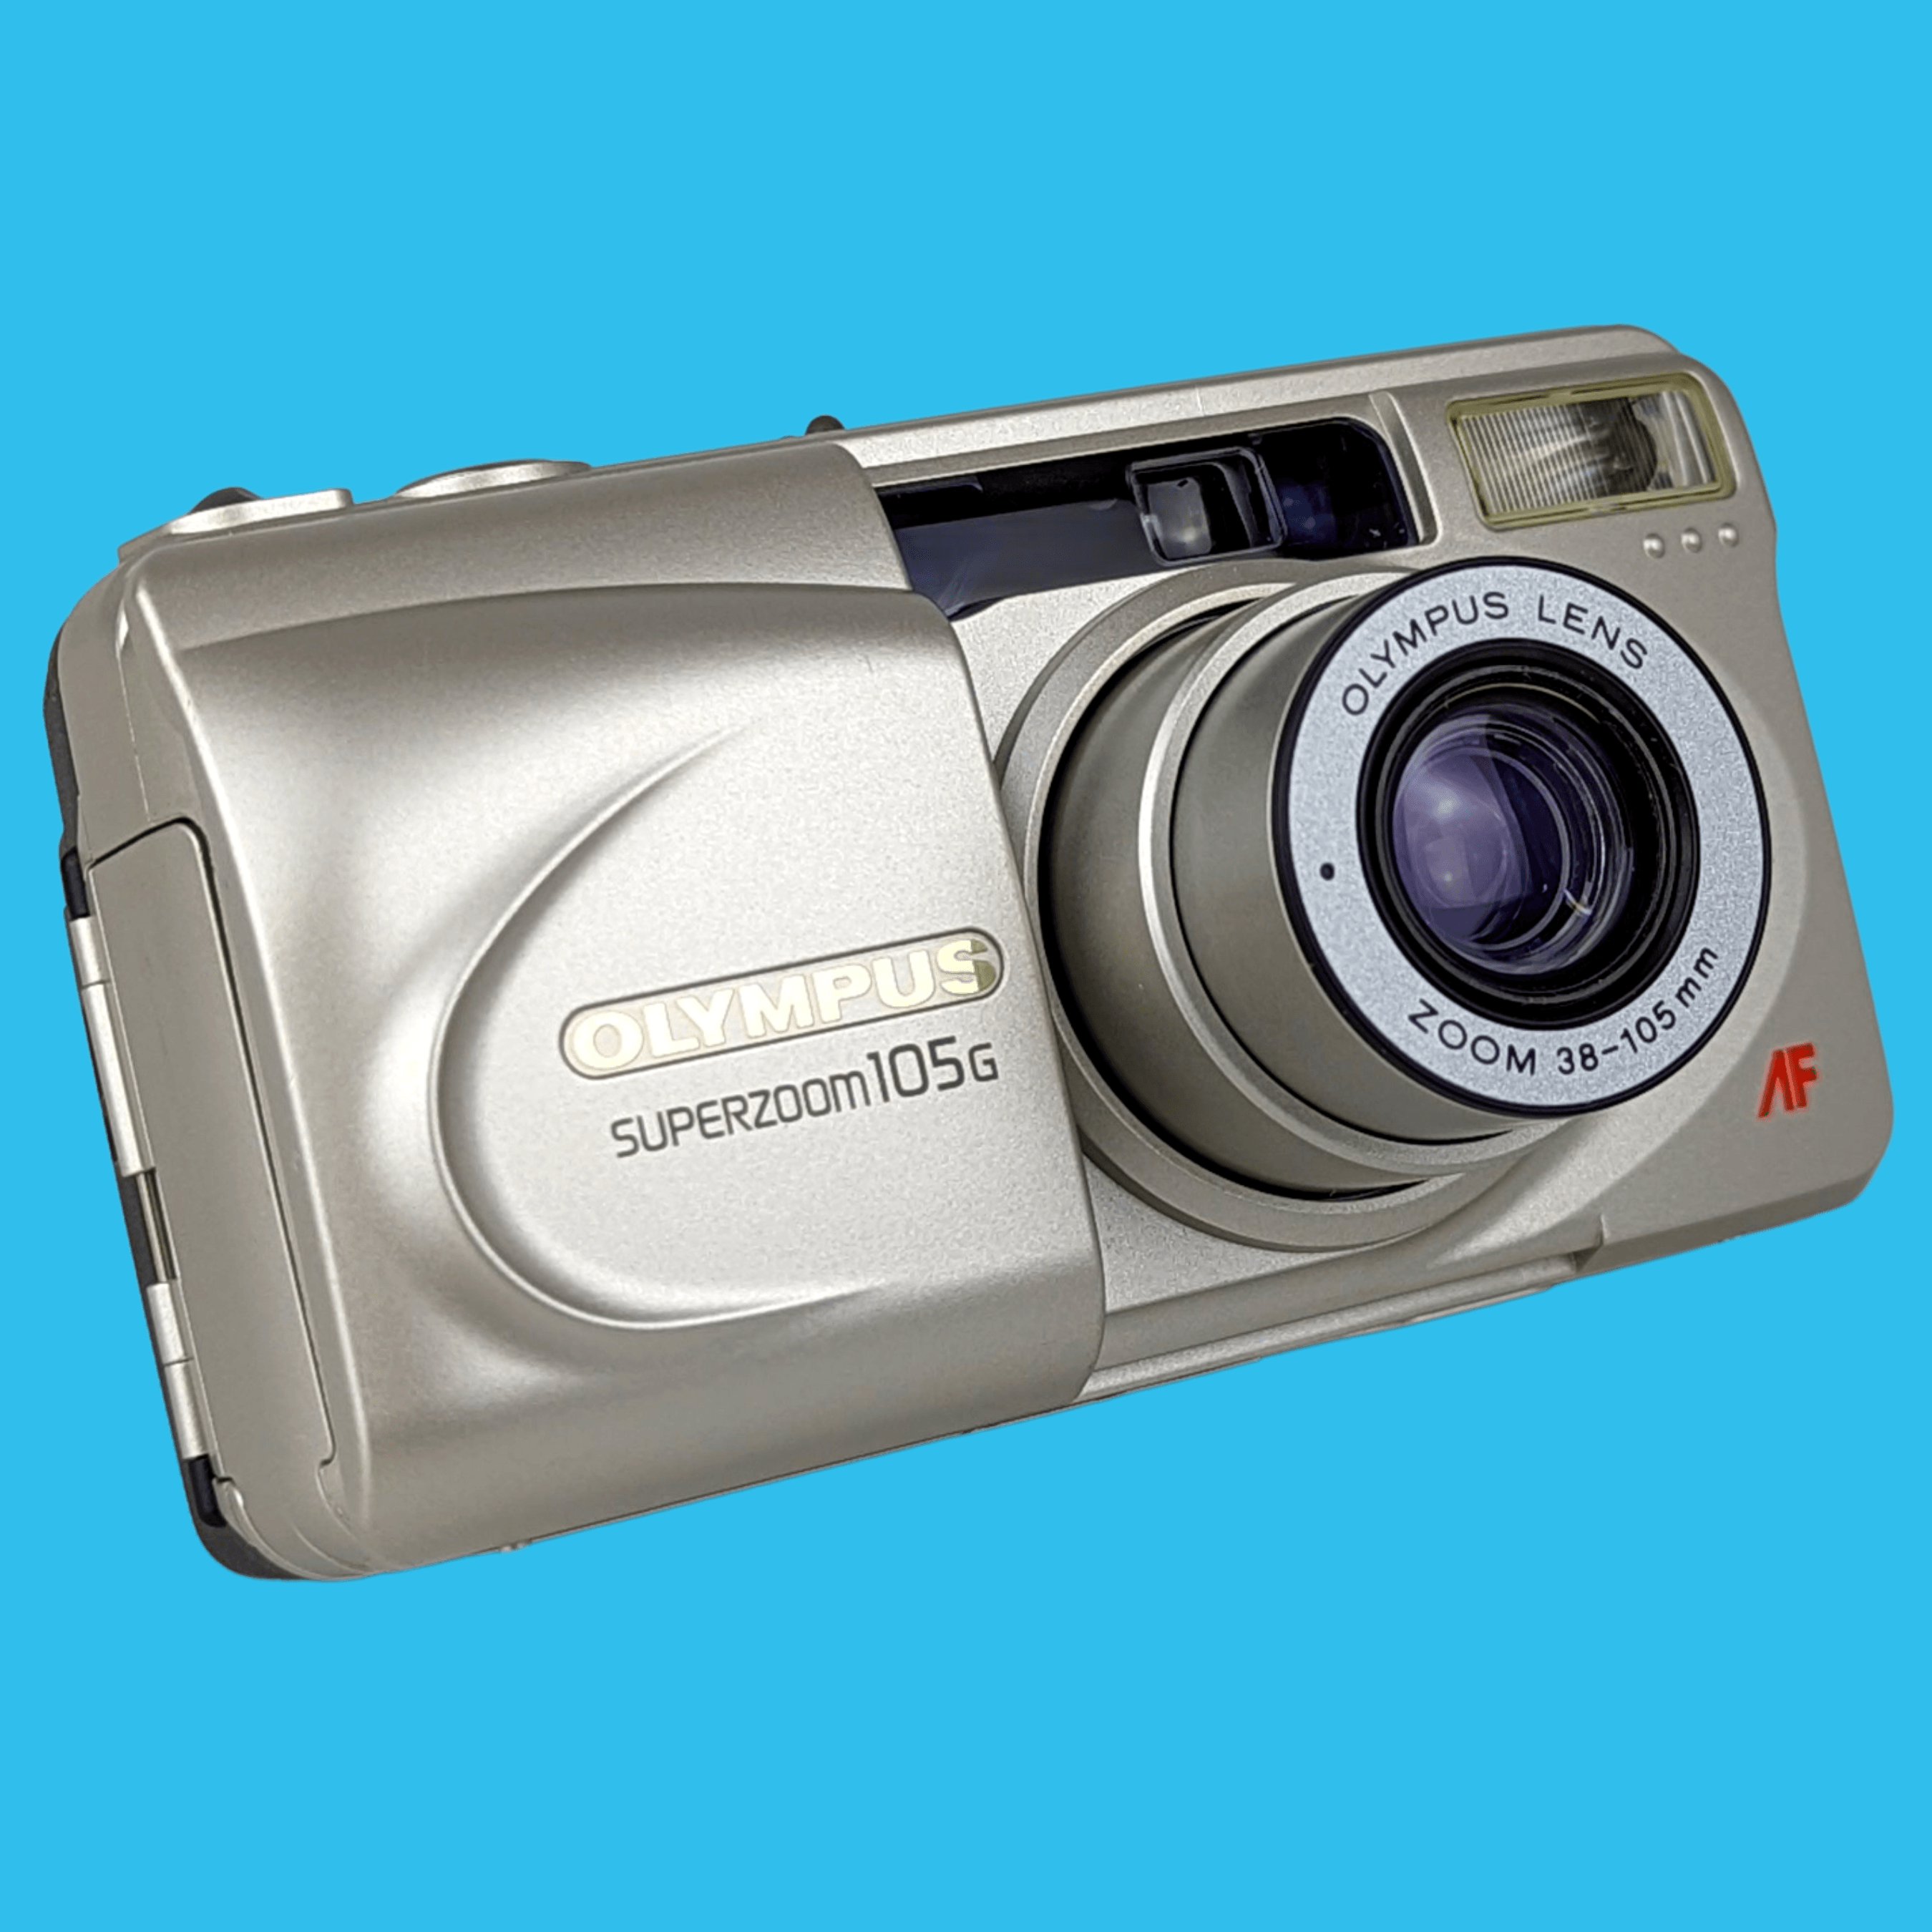 OLYMPUS スーパーズーム 105g - フィルムカメラ